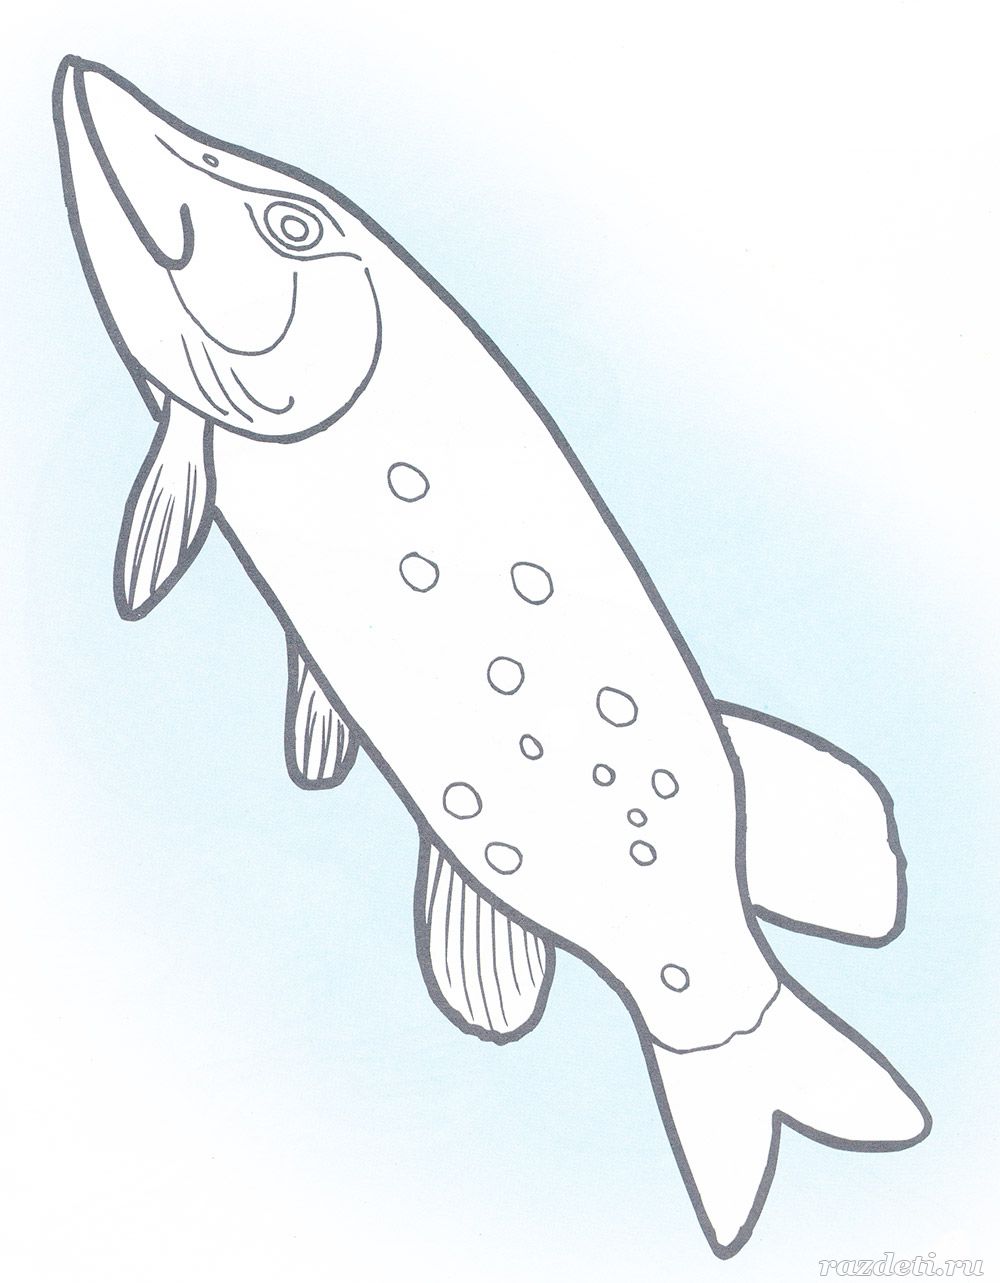 Картинки рыбки для детей для детского сада   подборка (24)